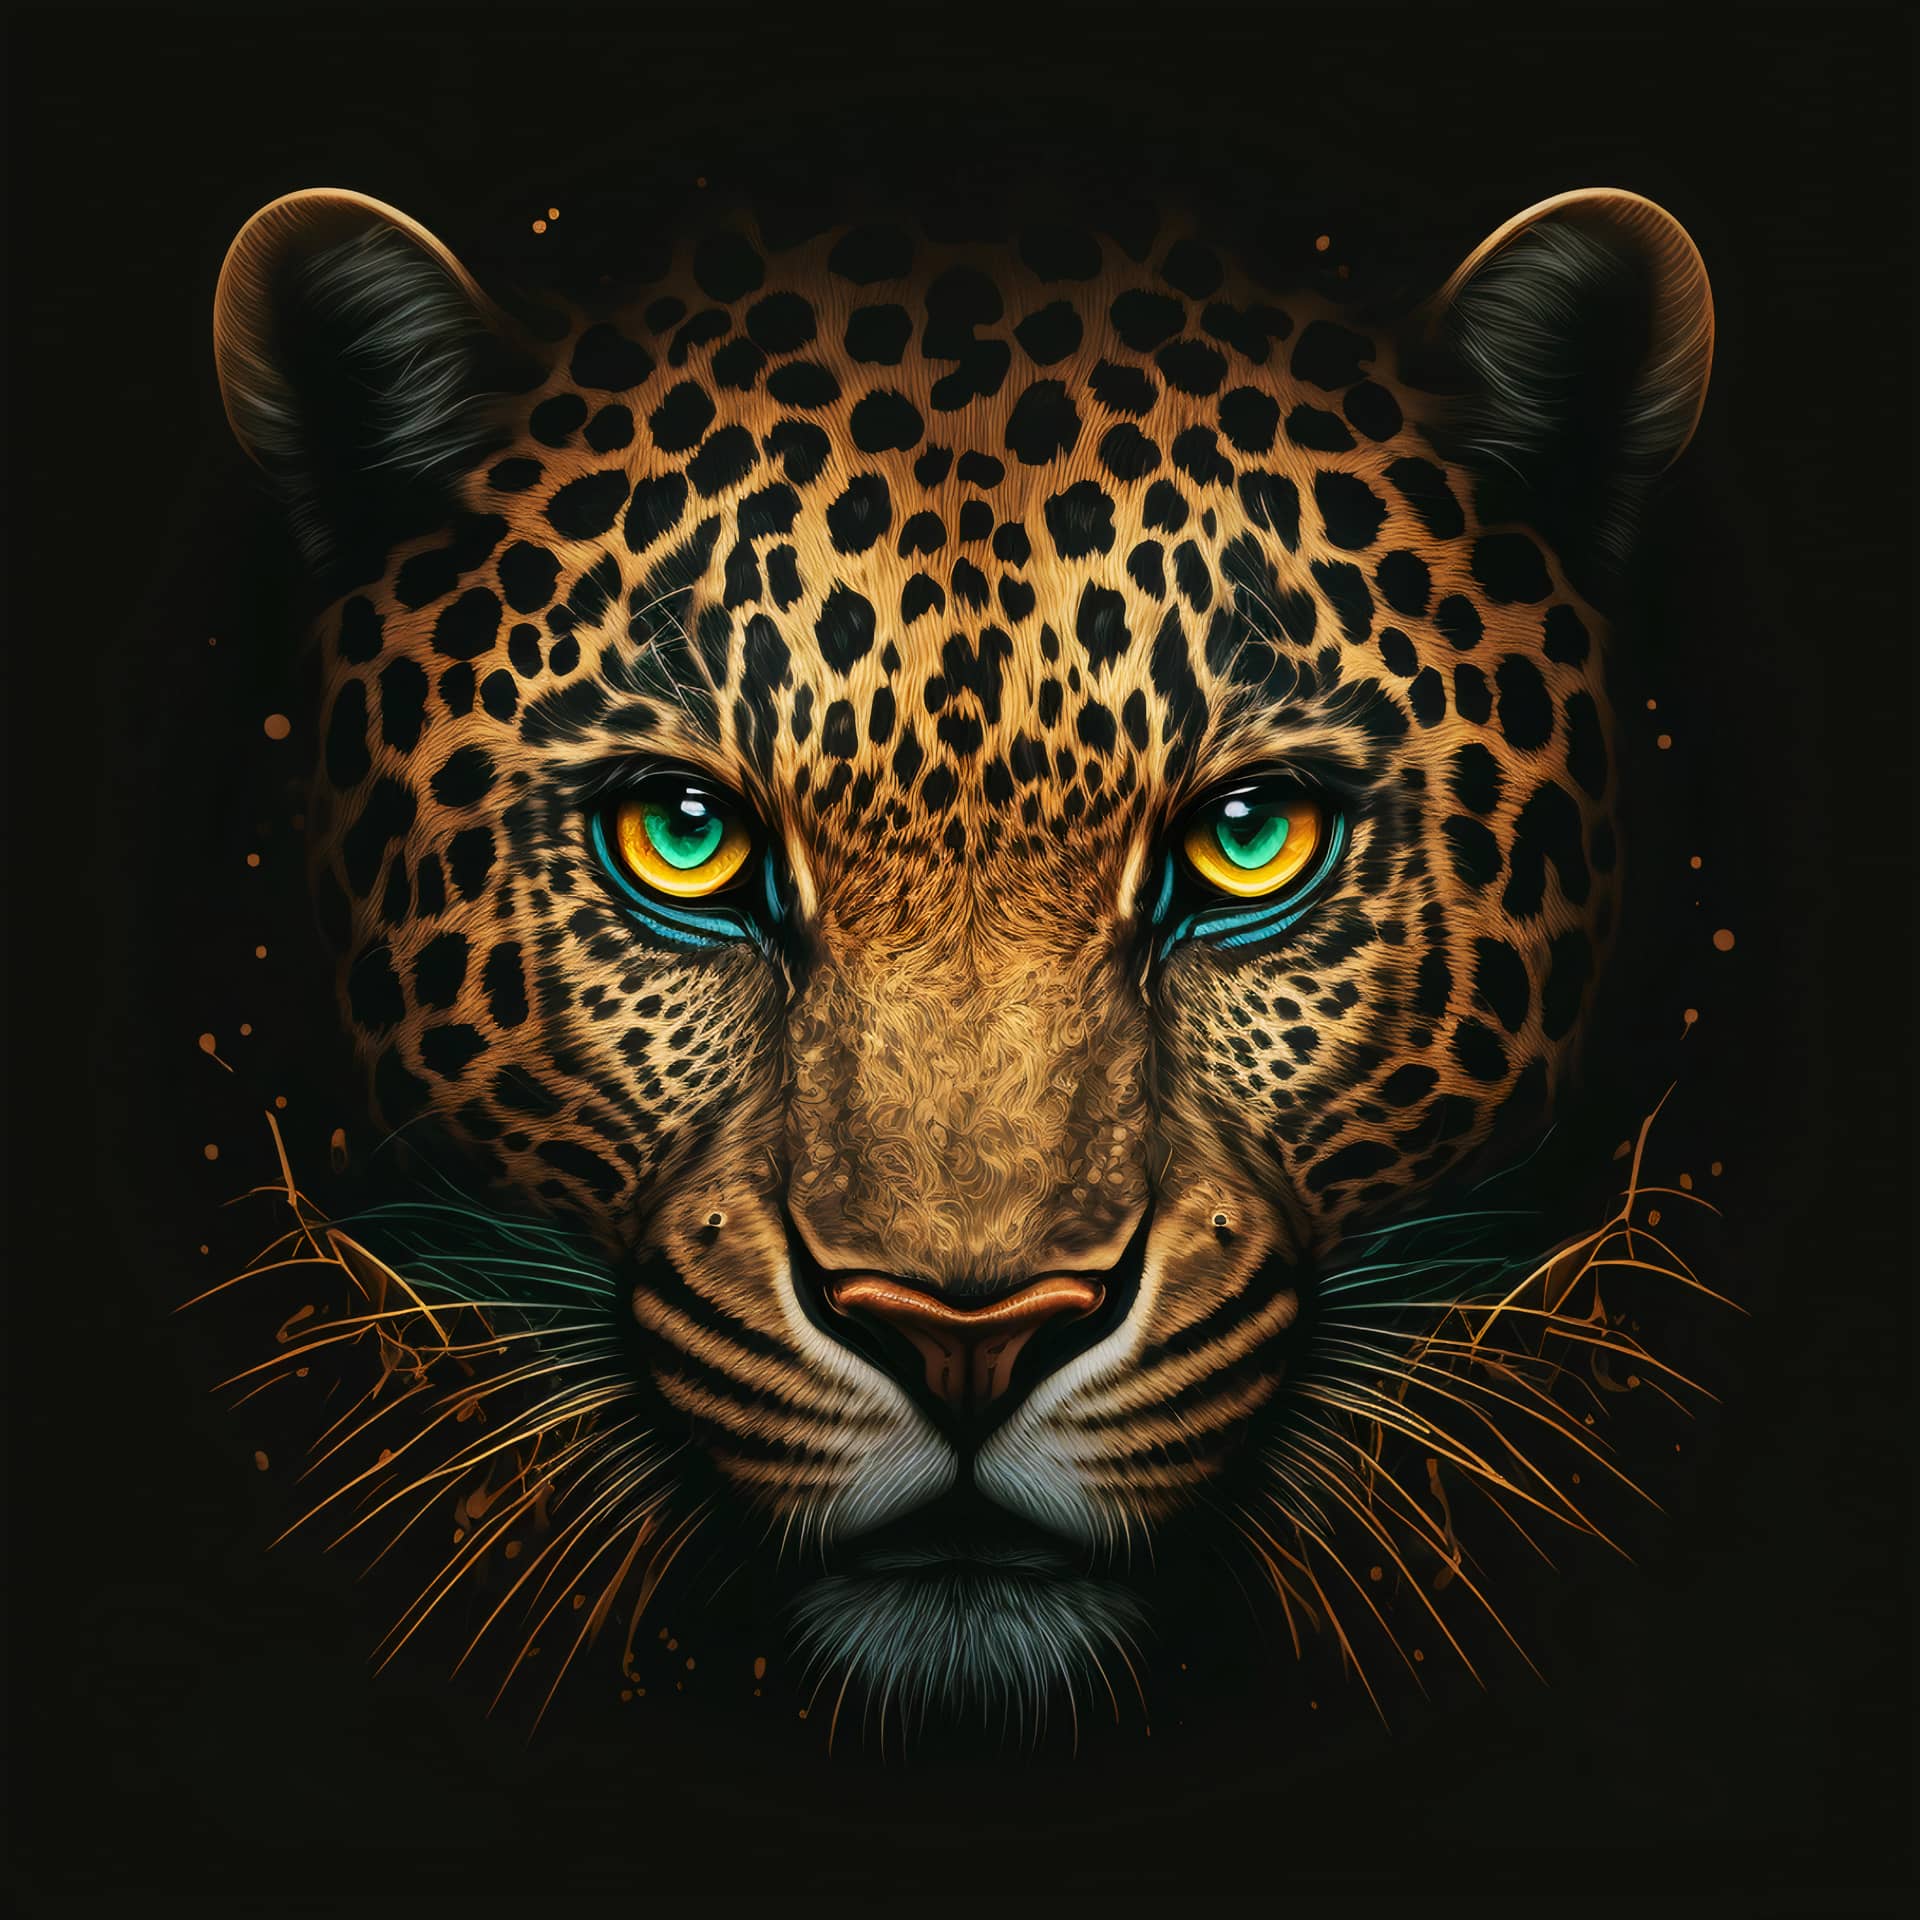 Jaguar illustration excellent picture